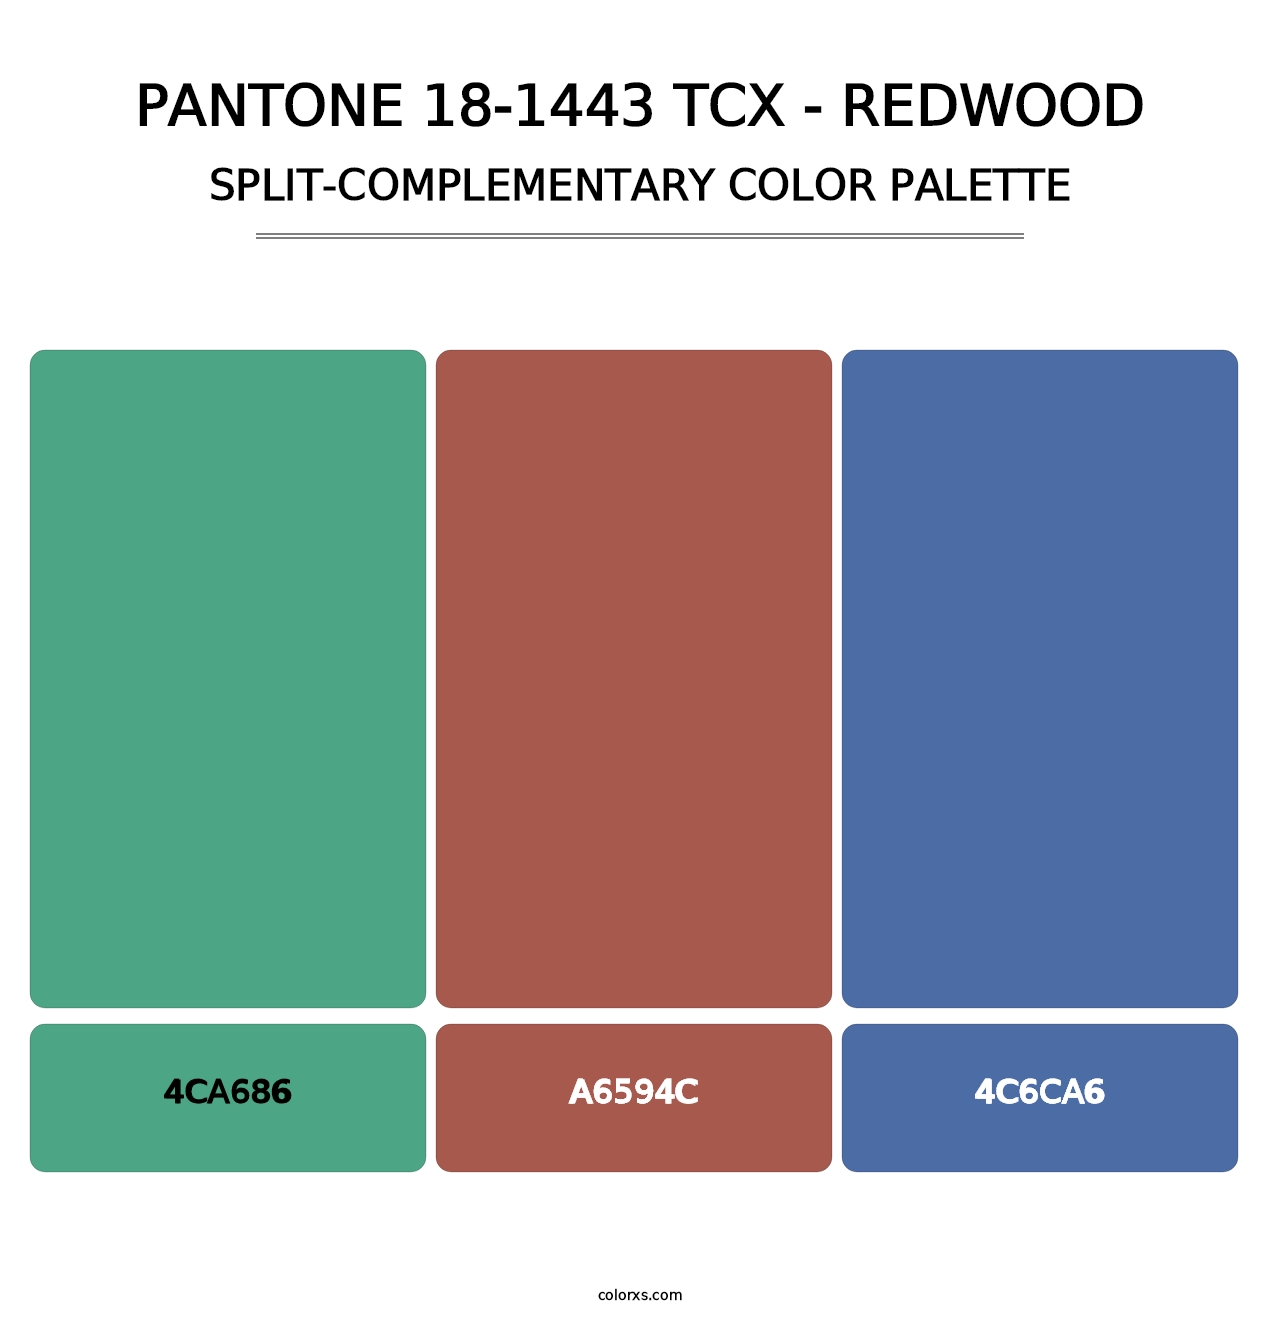 PANTONE 18-1443 TCX - Redwood - Split-Complementary Color Palette